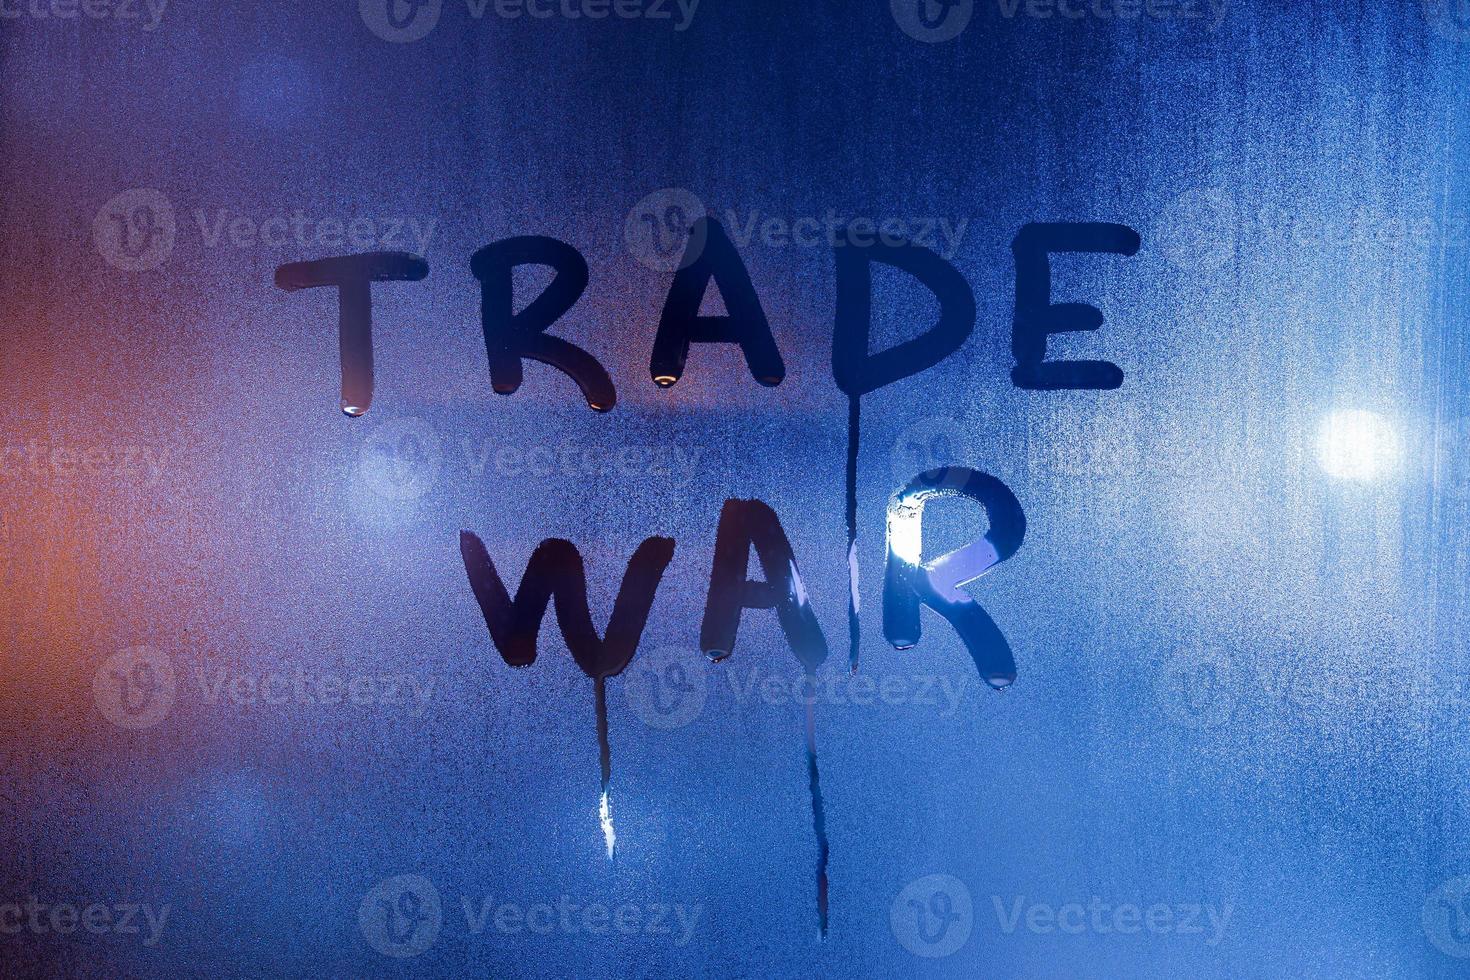 a frase guerra comercial escrita à mão no vidro de janela molhado da noite azul clássico foto